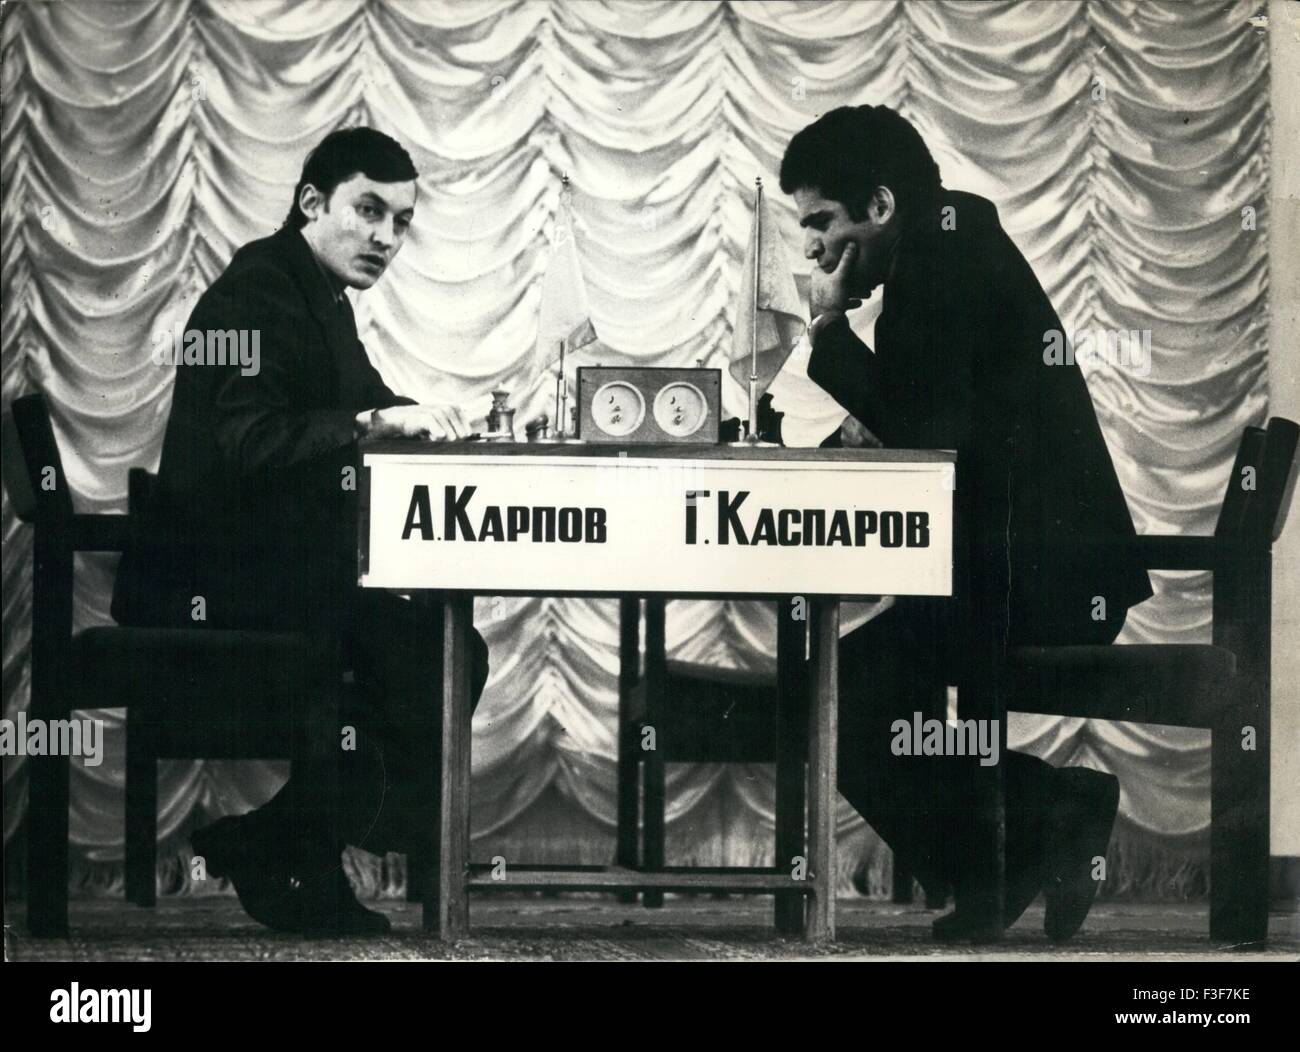 Scacchi, anche sul web la sfida Kasparov-Karpov 25 anni dopo